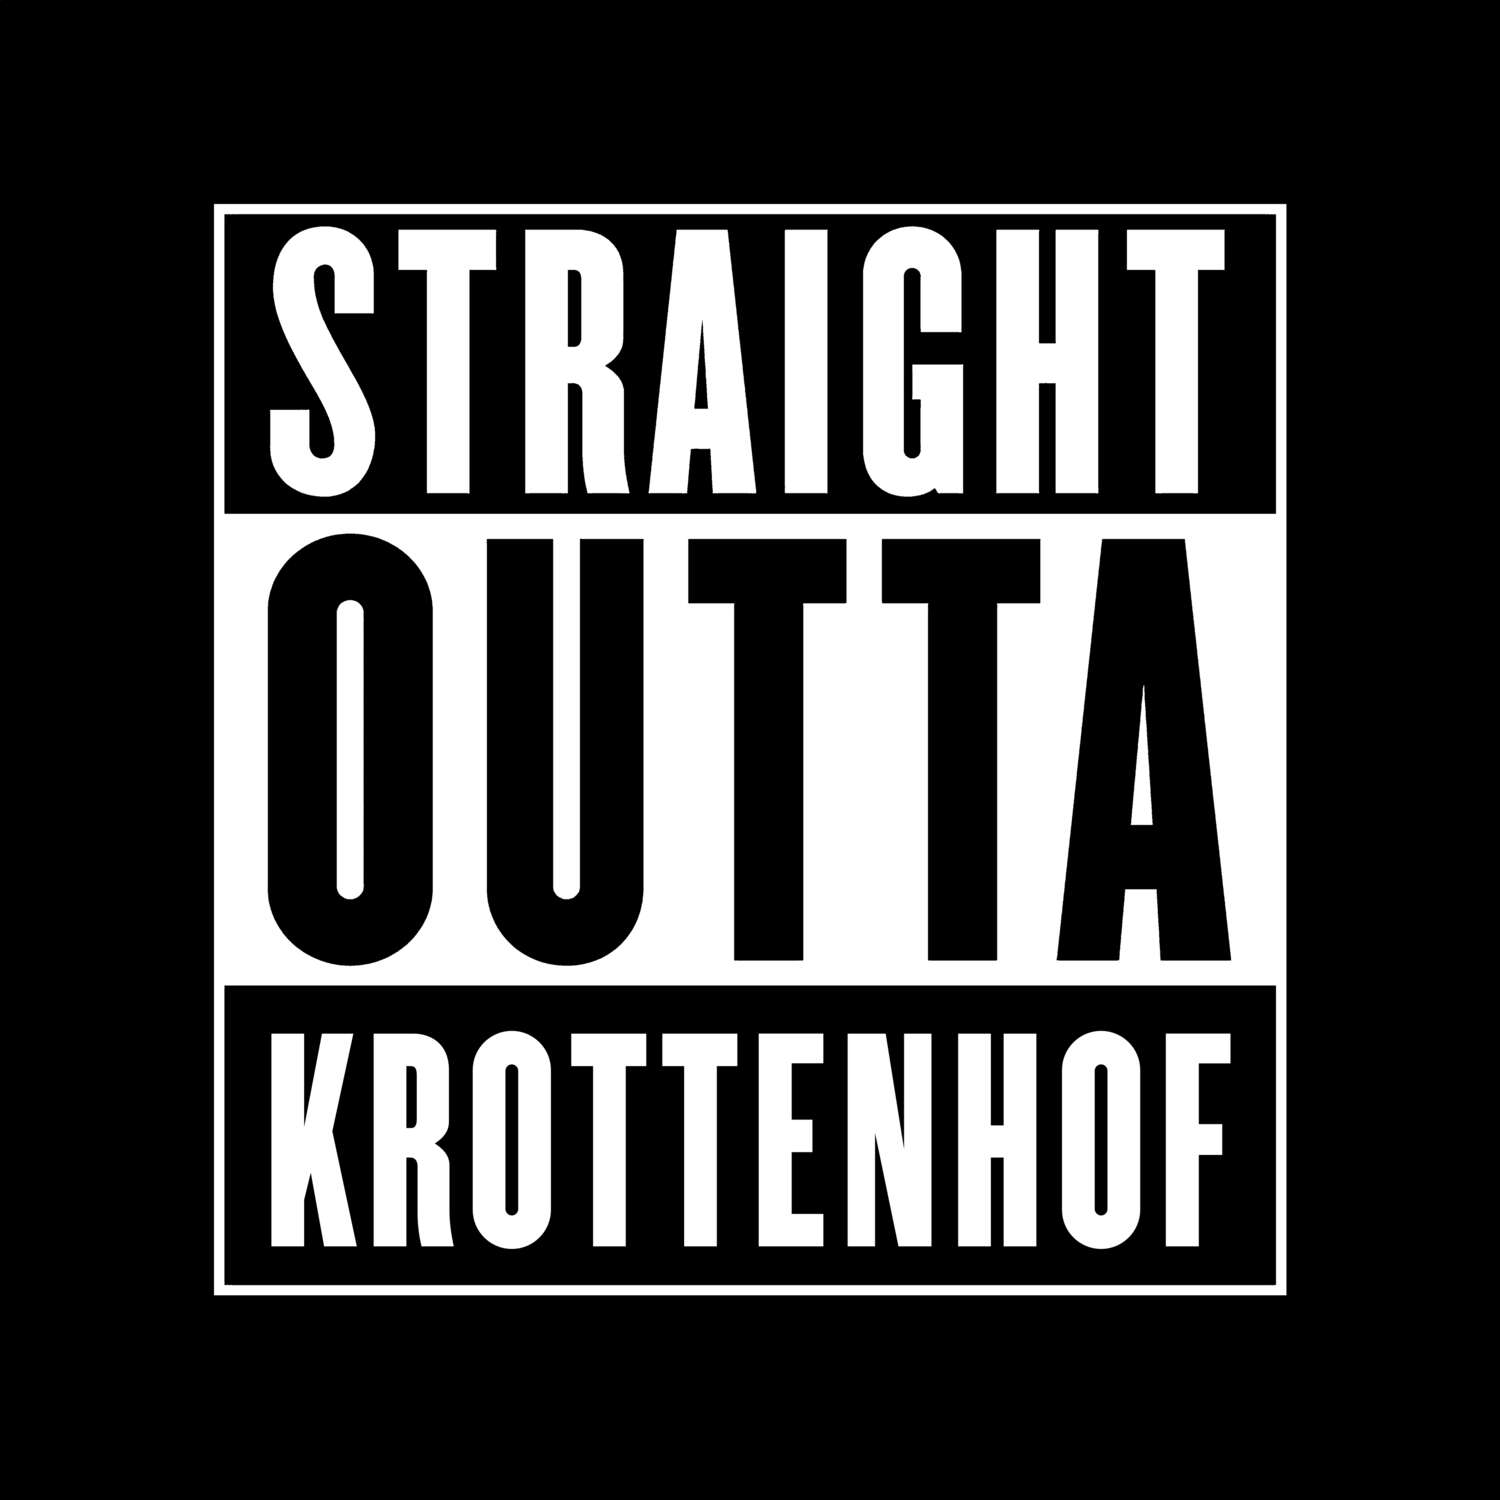 Krottenhof T-Shirt »Straight Outta«